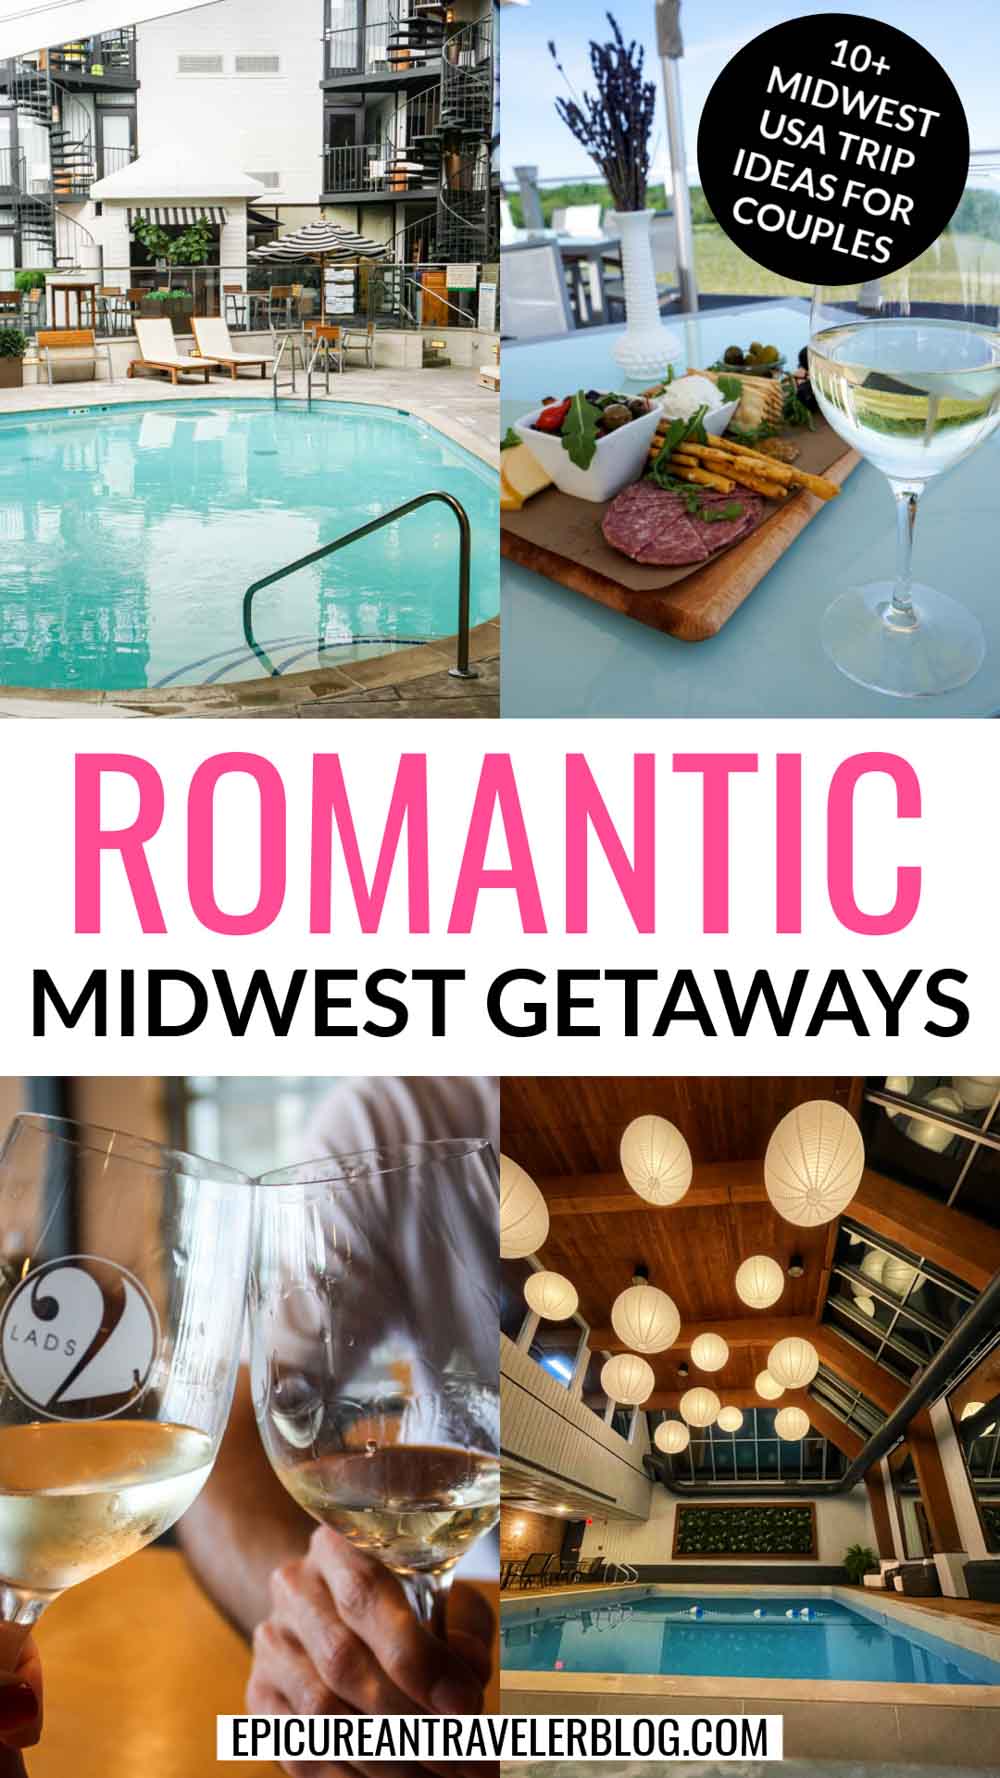 Romantic Midwest Getaways